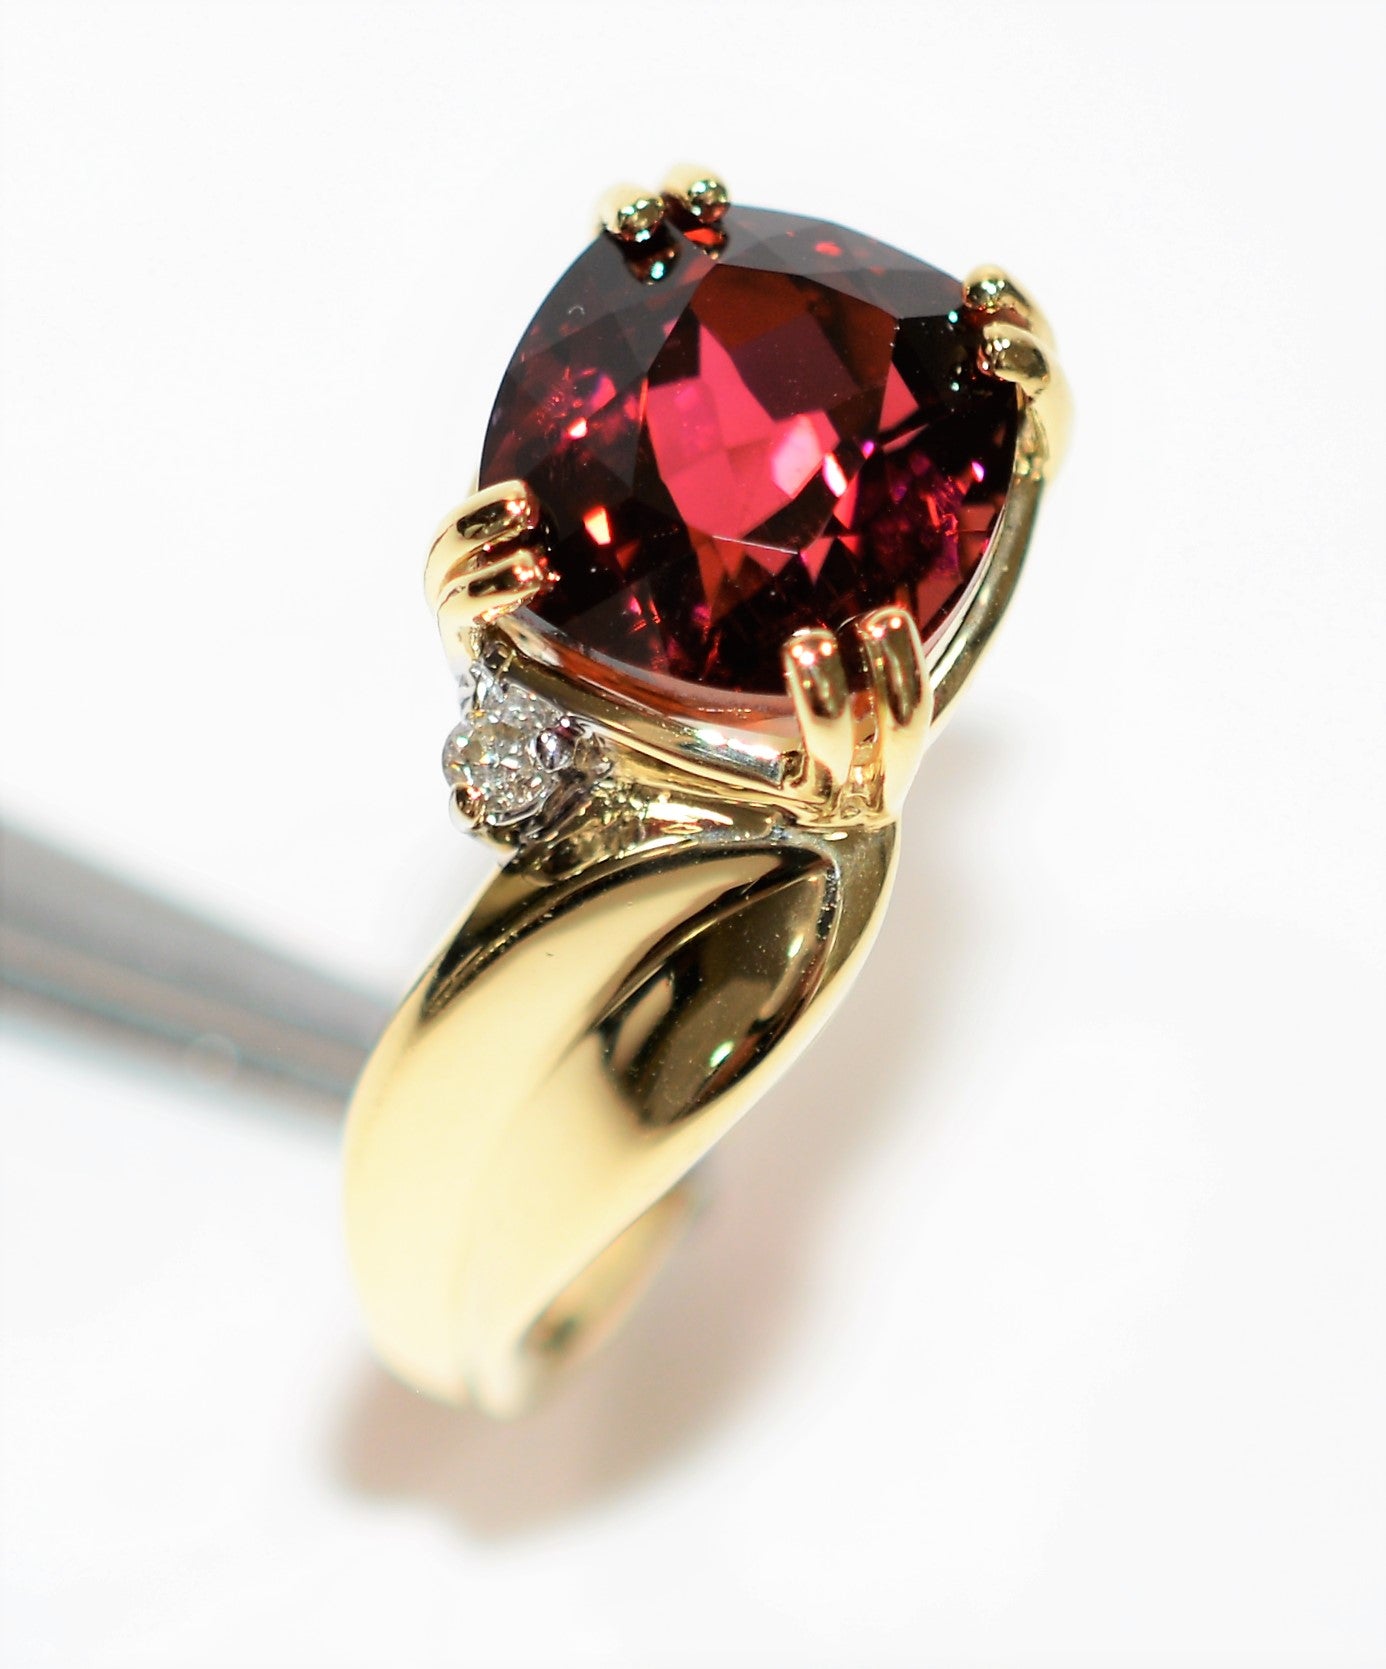 Natural Rubellite & Diamond Ring 14K Solid Gold 4.29tcw Pink Tourmaline Ring Statement Ring Women's Ring Birthstone Ring Gemstone Ring Estate